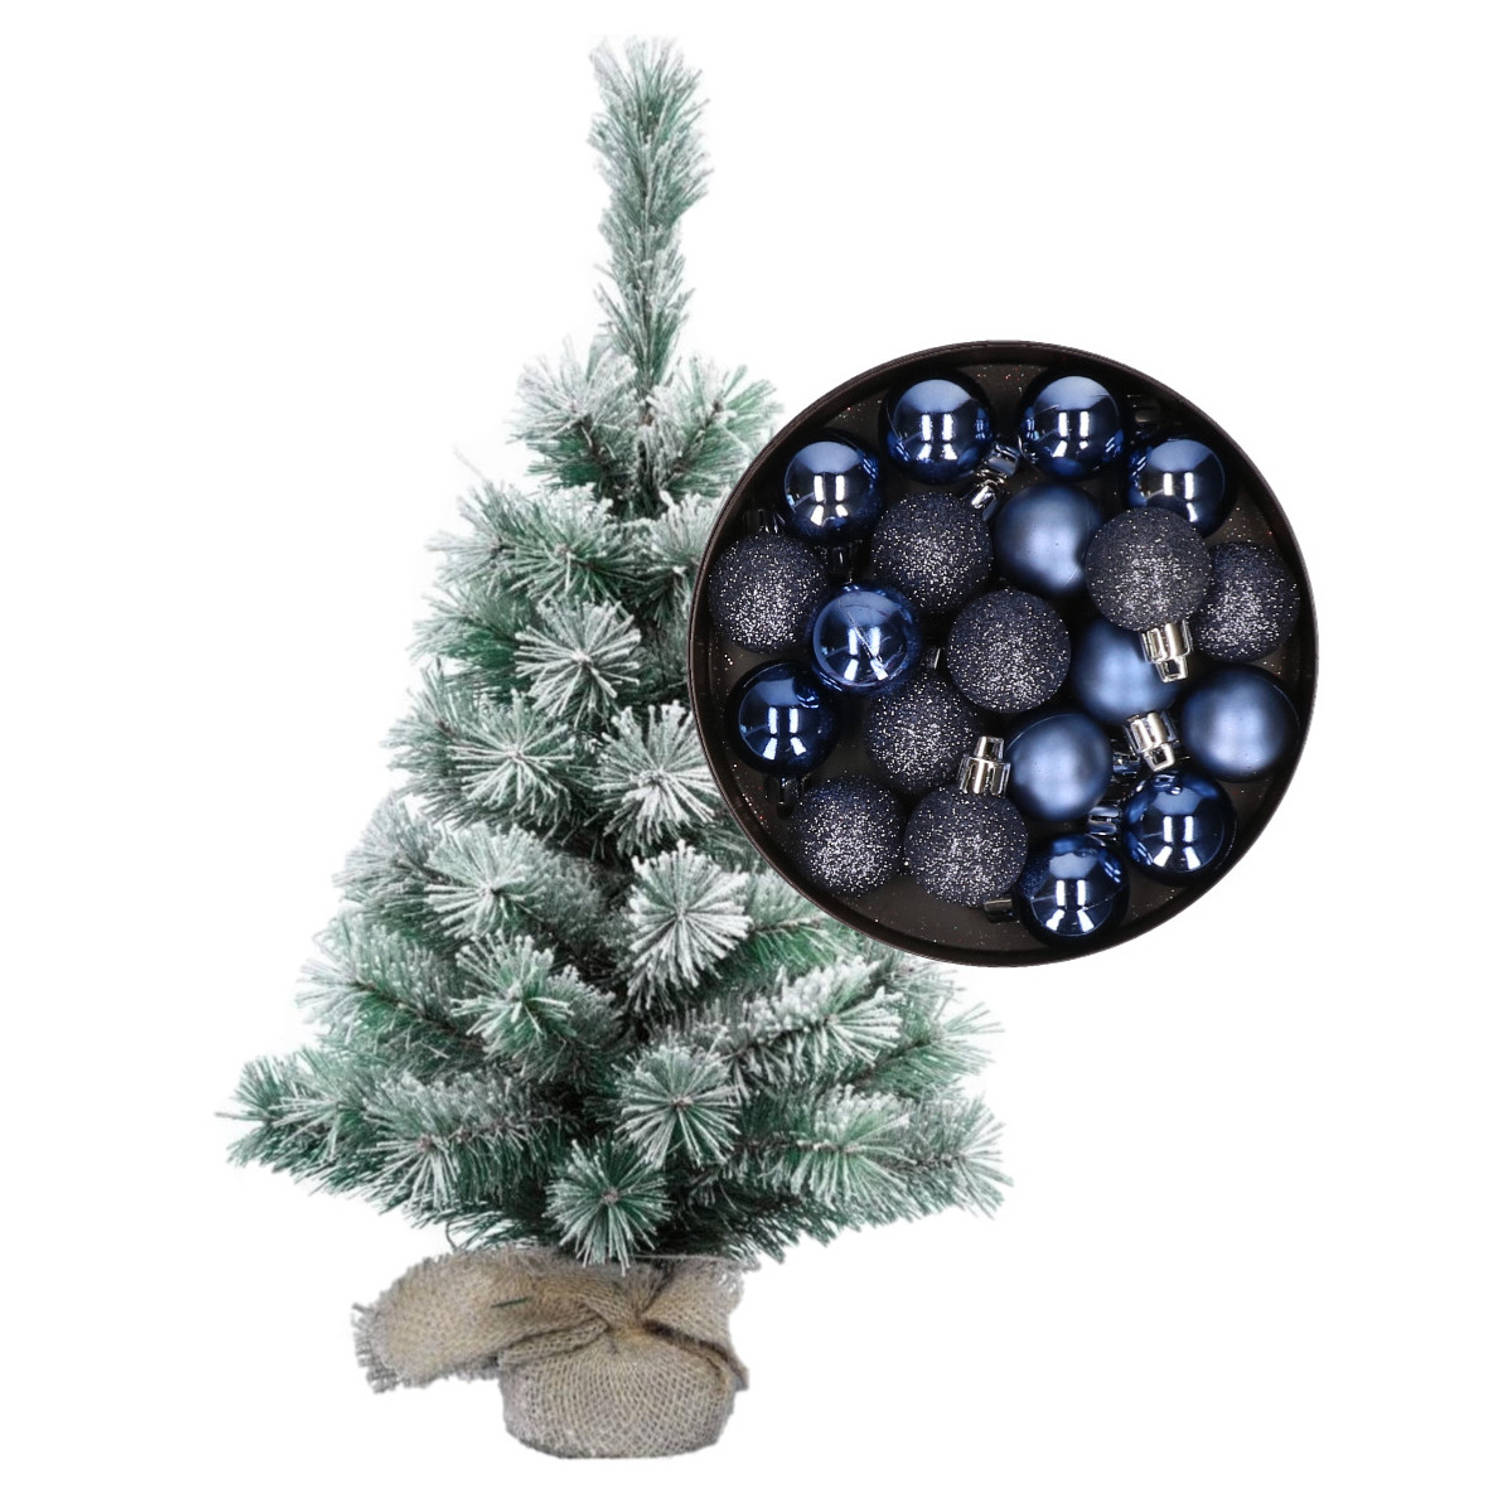 Besneeuwde mini kerstboom-kunst kerstboom 35 cm met kerstballen donkerblauw Kunstkerstboom